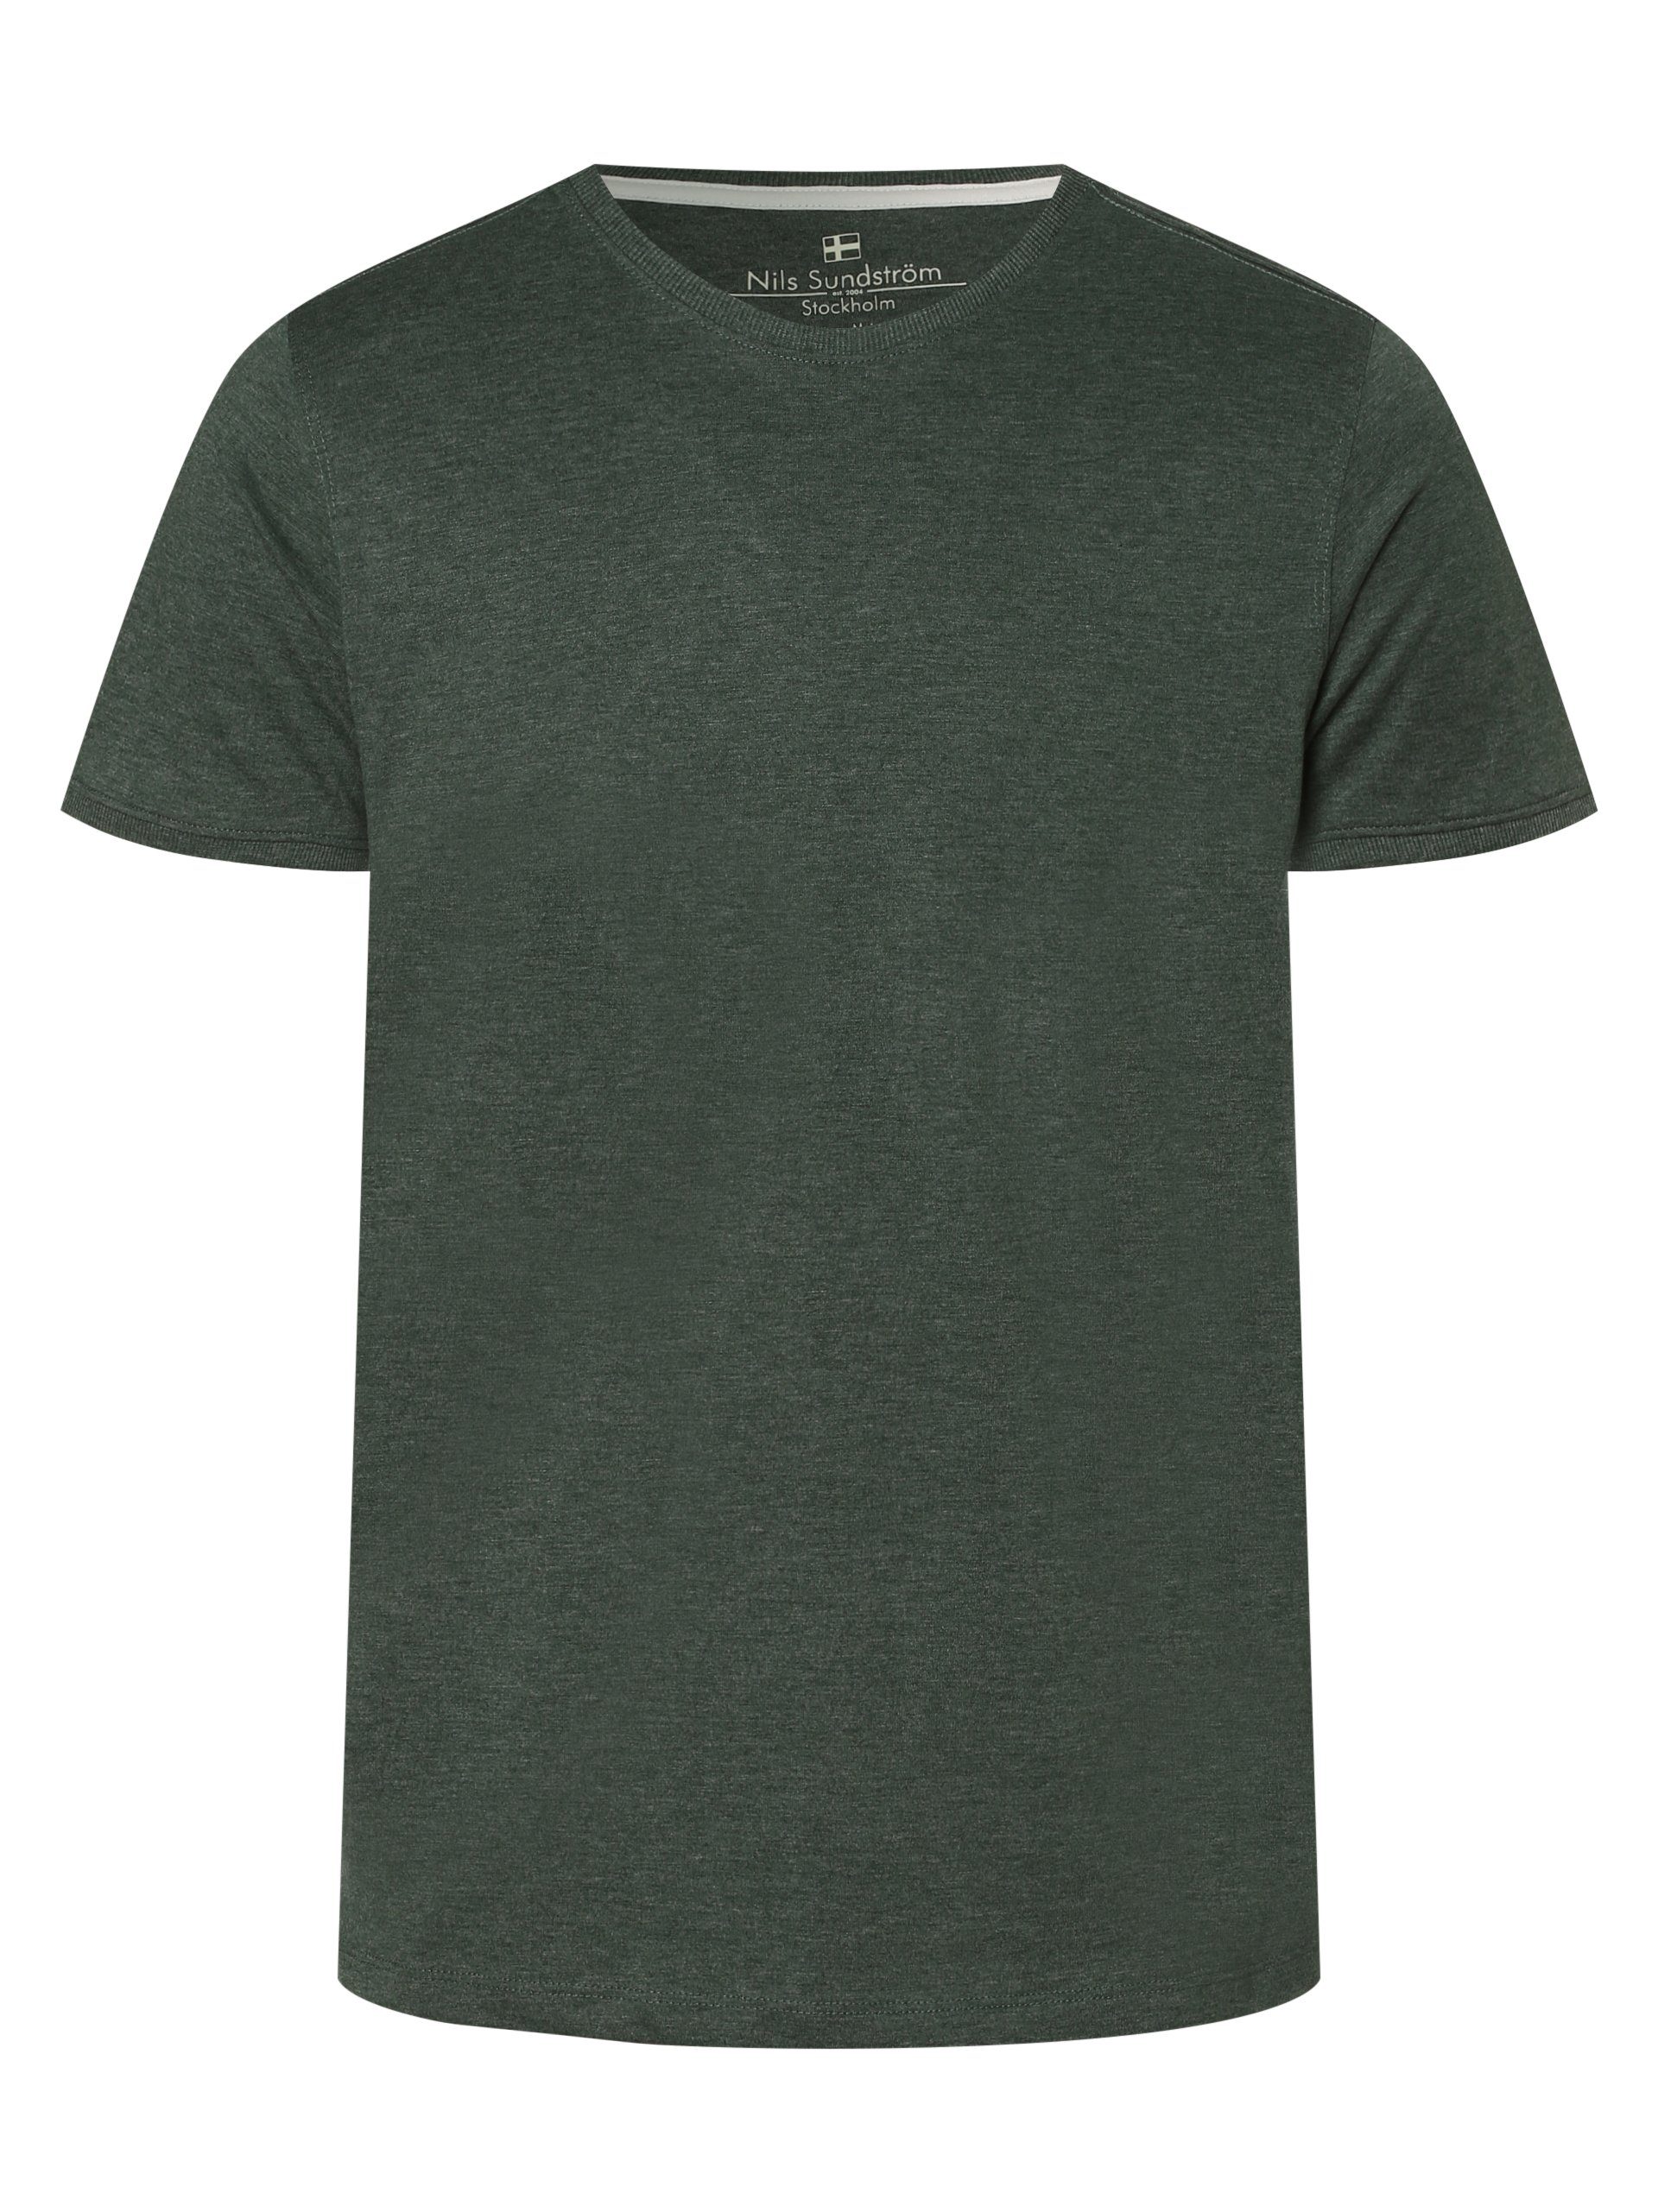 Sundström Nils T-Shirt grün